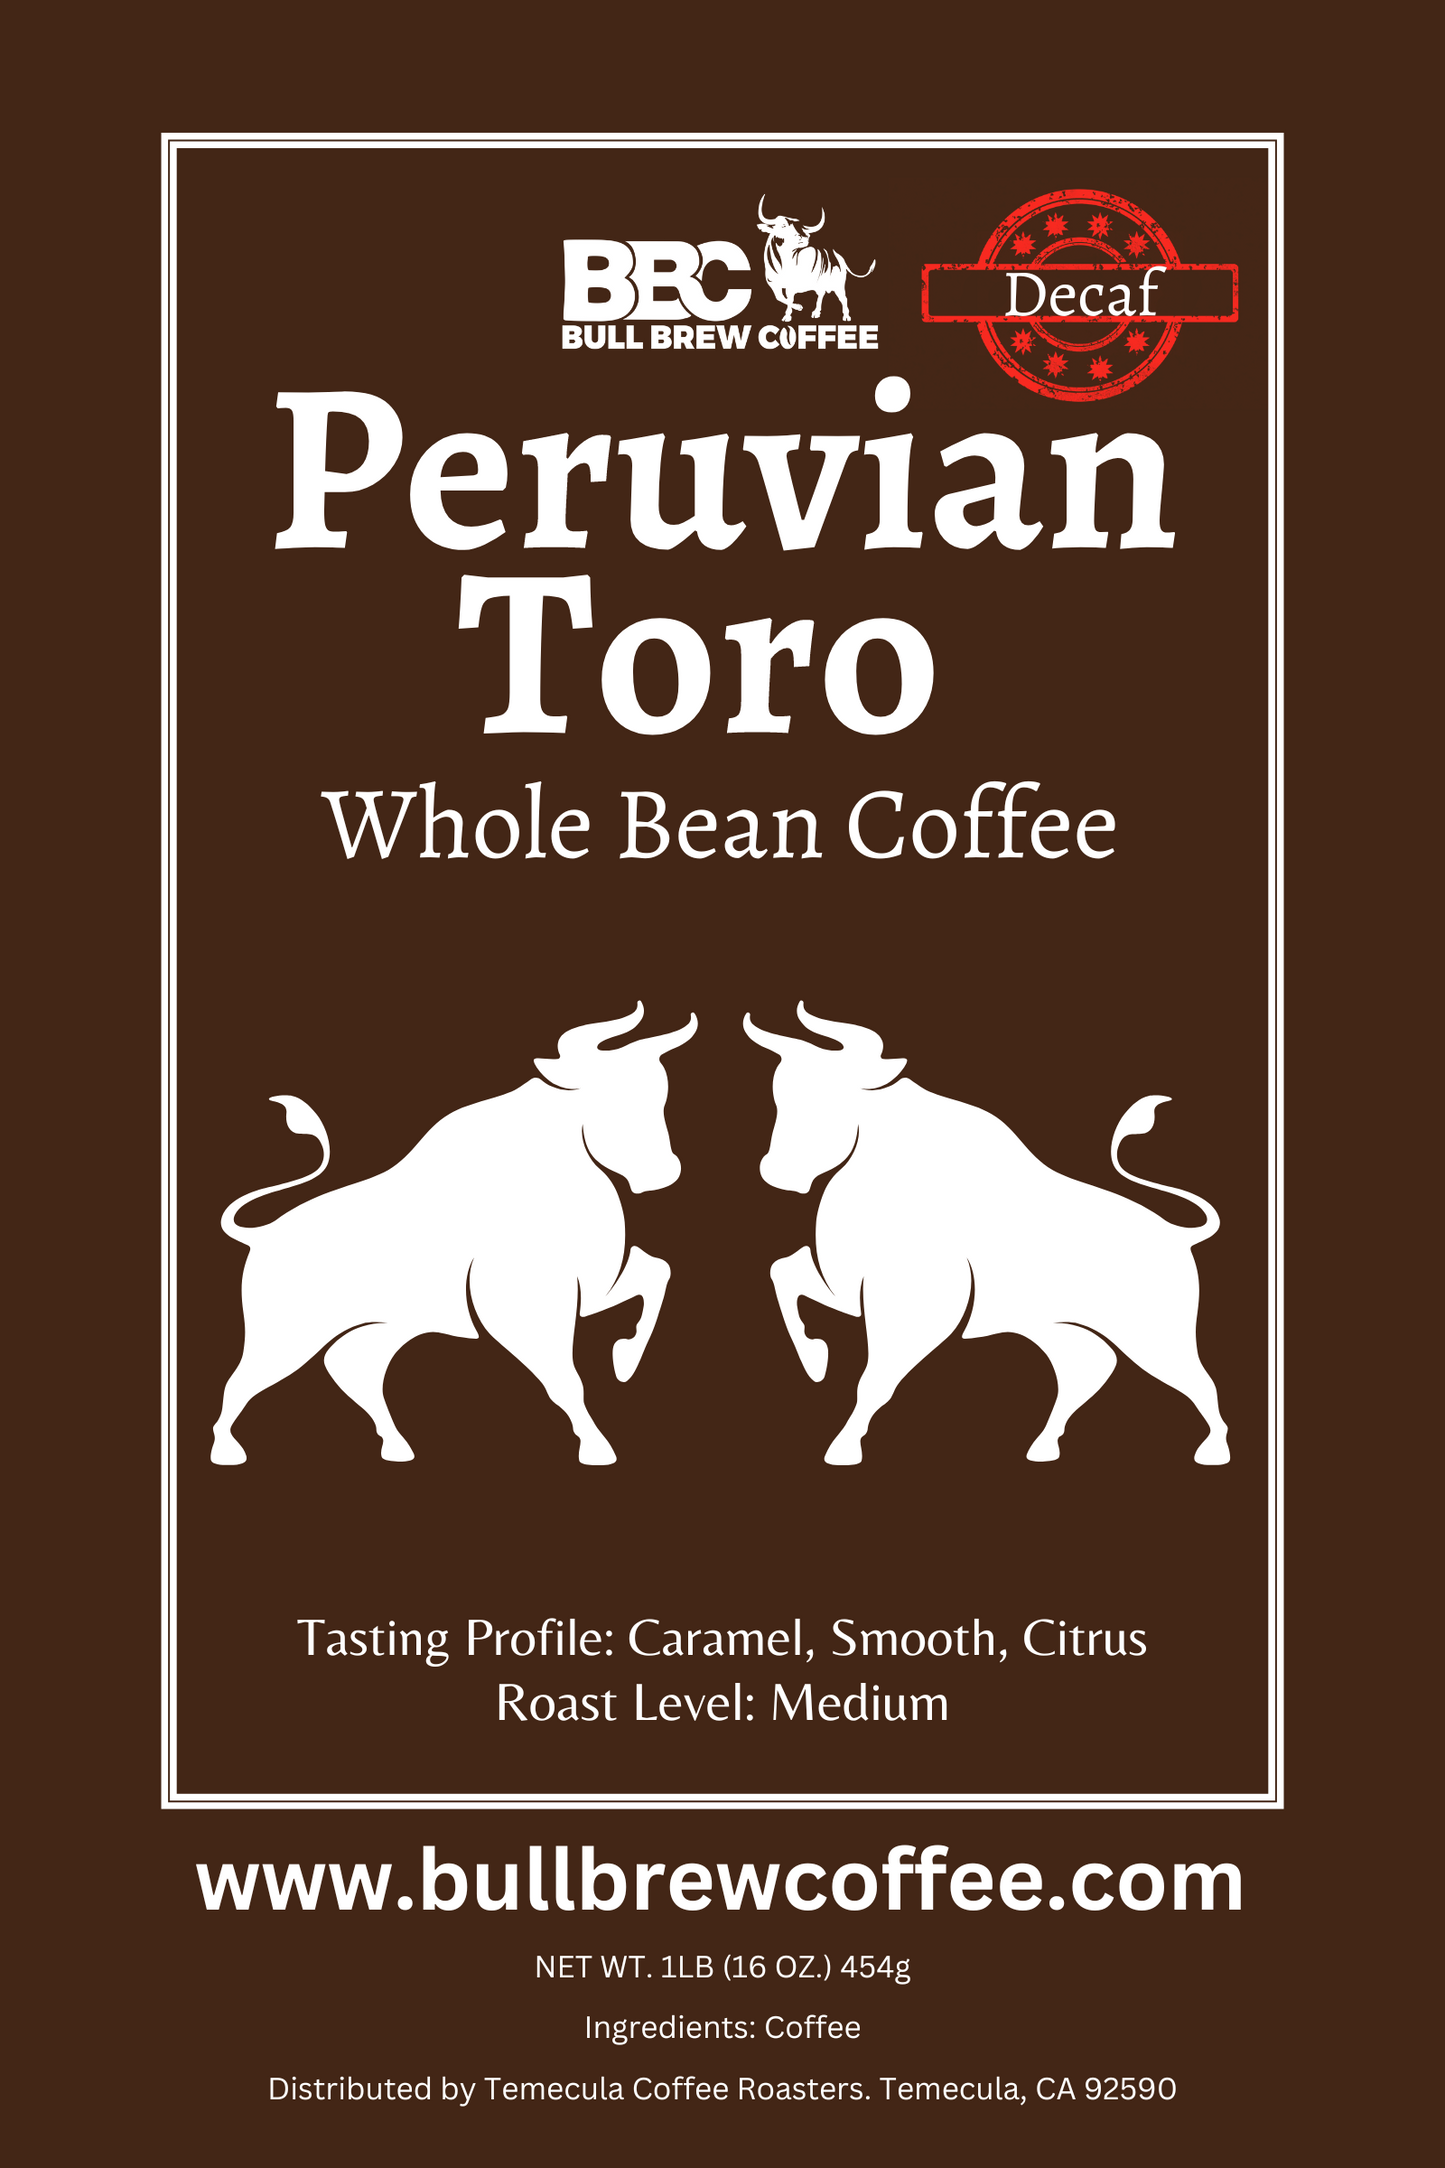 Peruvian Toro Decaf Coffee